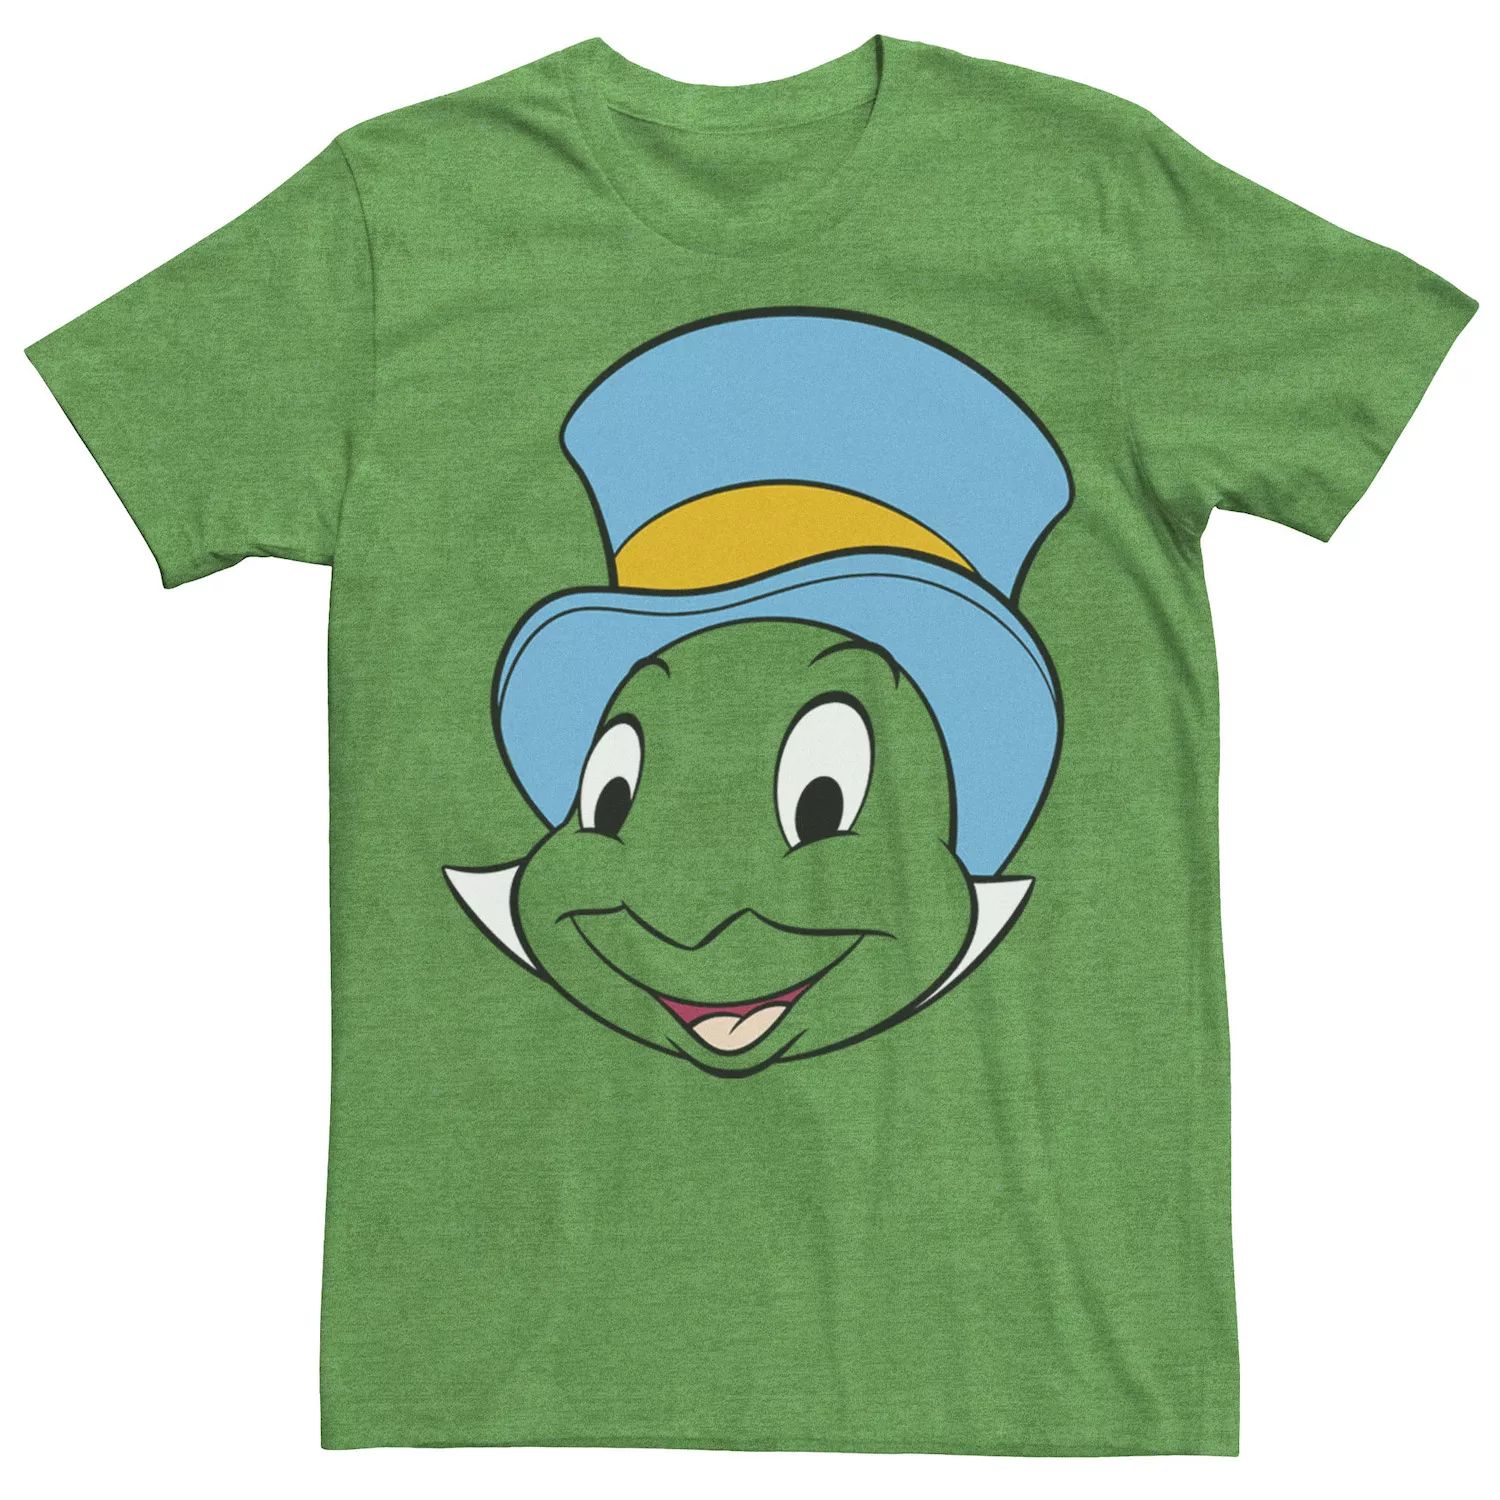 Мужская футболка Disney Pinocchio Jiminy Cricket с большим лицом Licensed Character